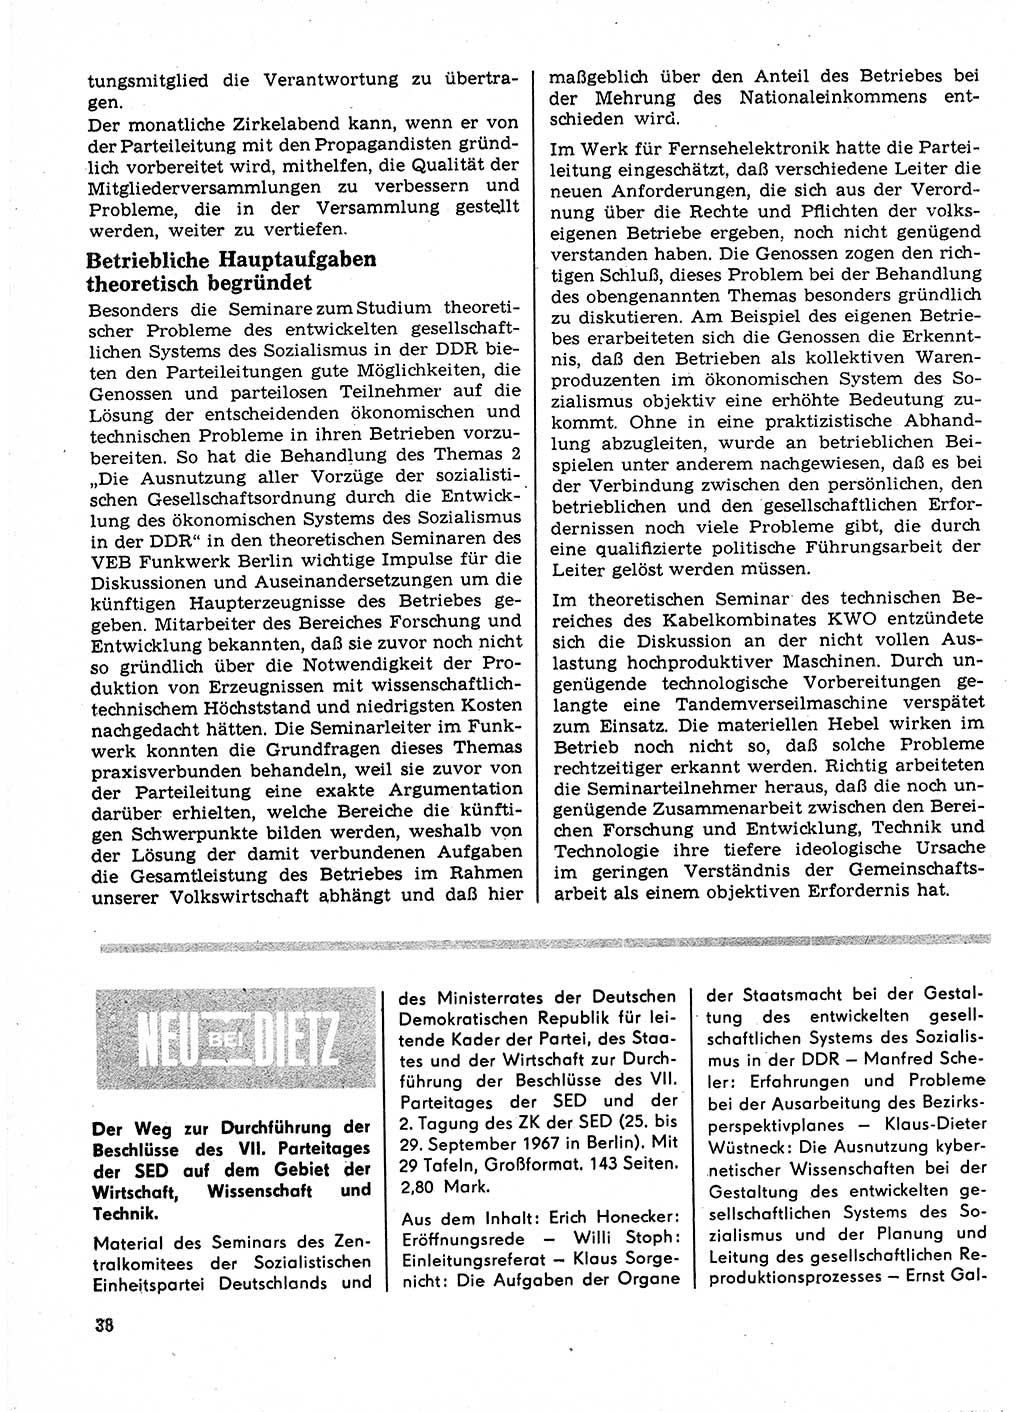 Neuer Weg (NW), Organ des Zentralkomitees (ZK) der SED (Sozialistische Einheitspartei Deutschlands) für Fragen des Parteilebens, 23. Jahrgang [Deutsche Demokratische Republik (DDR)] 1968, Seite 38 (NW ZK SED DDR 1968, S. 38)